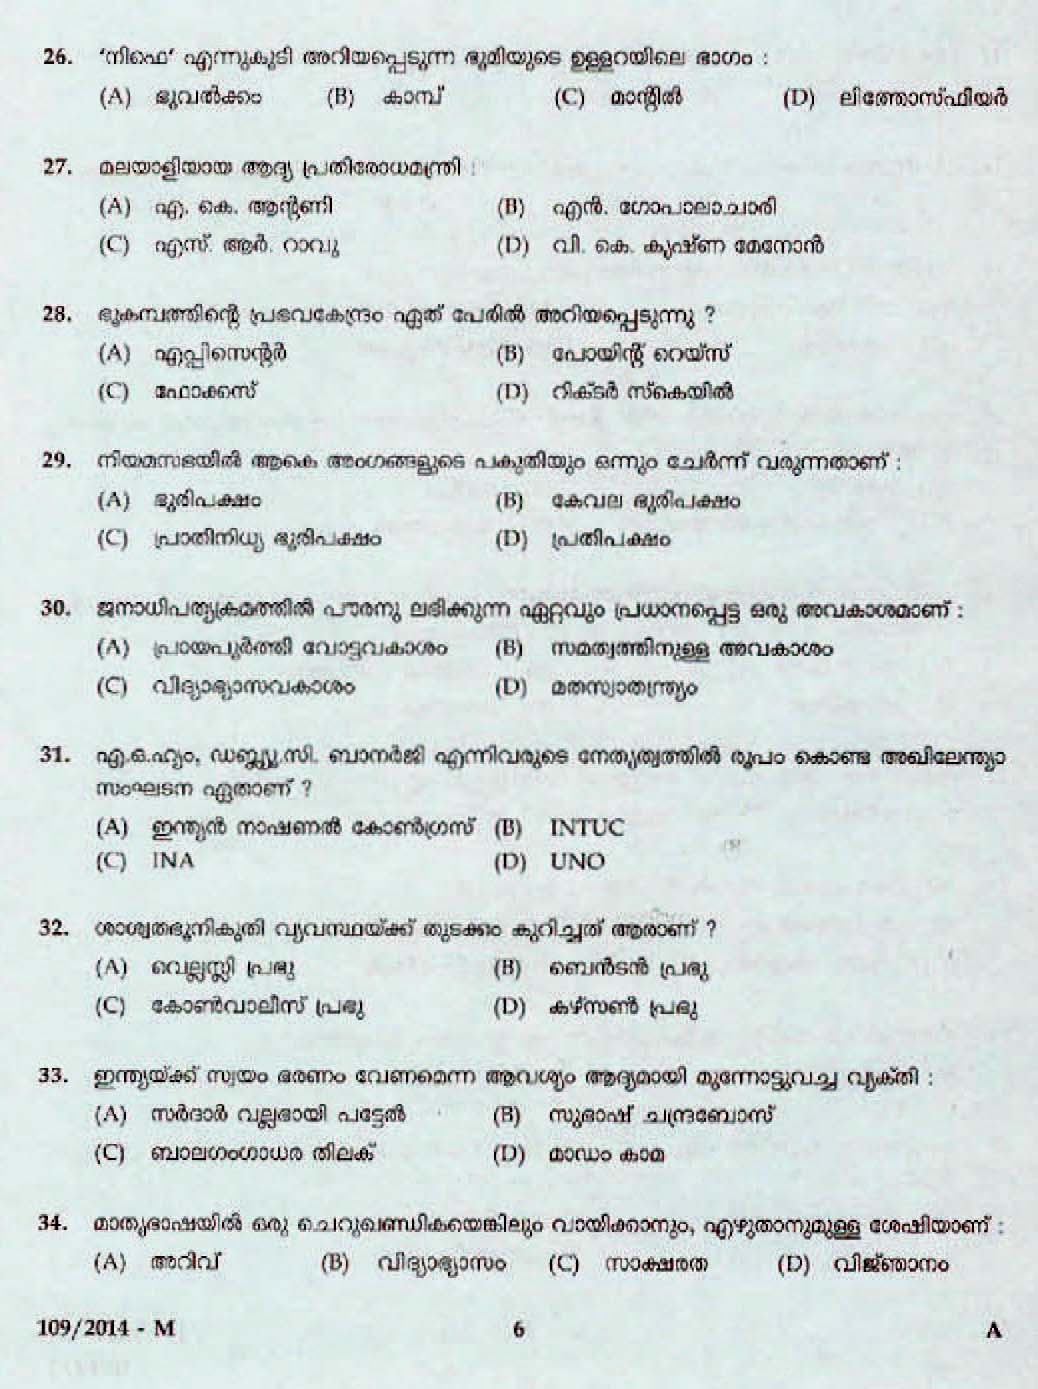 Kerala Last Grade Servants Exam 2014 Question Paper Code 1092014 M 4